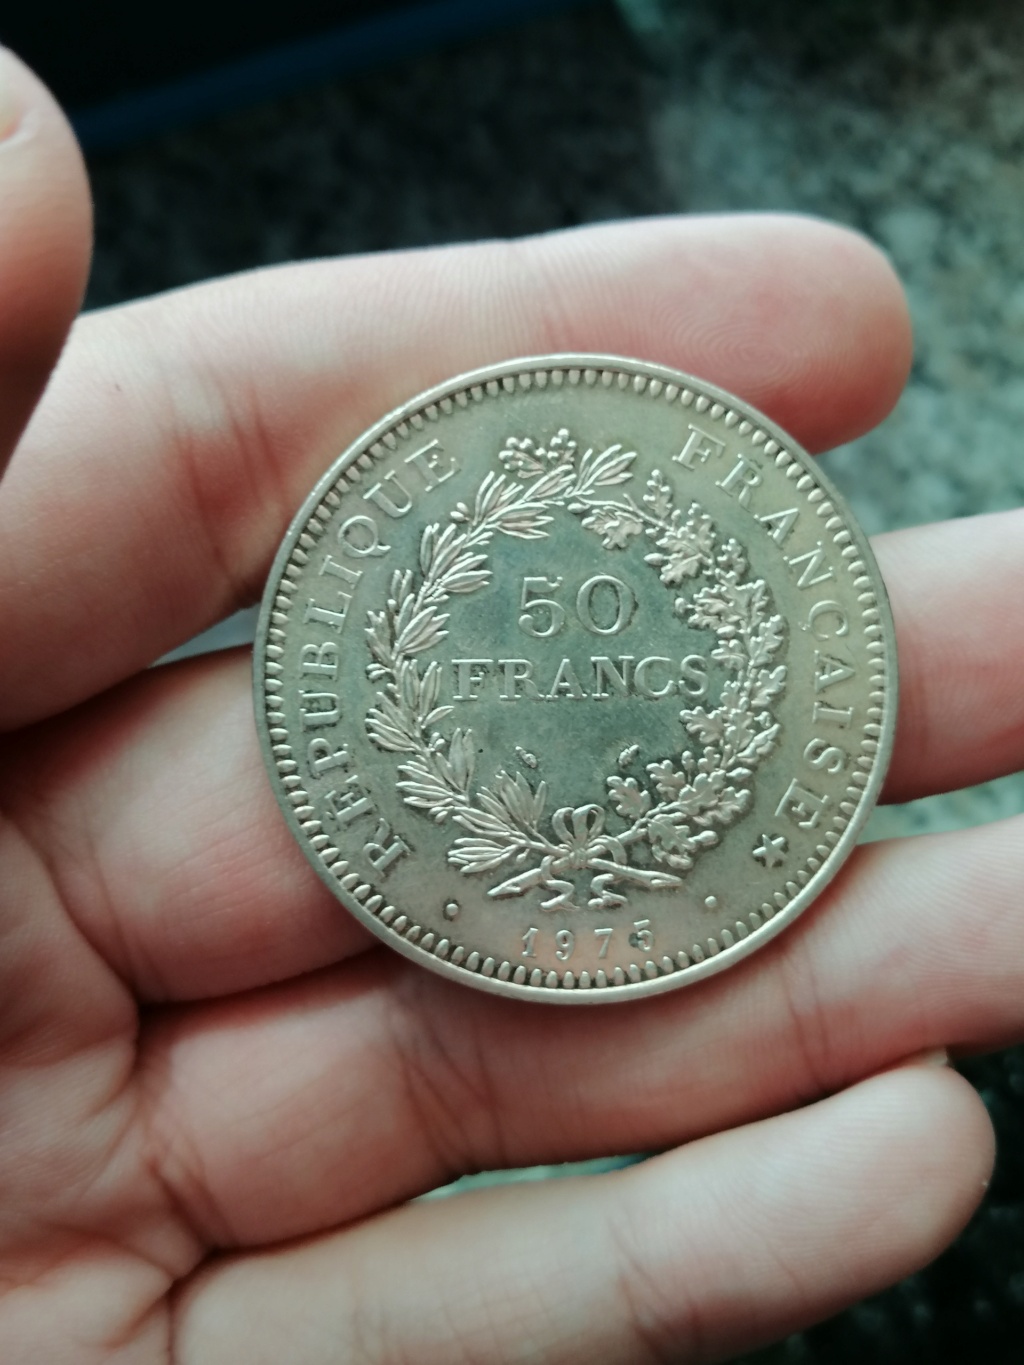 5ª República Francesa - 50 Francos de plata 1975 Revers17